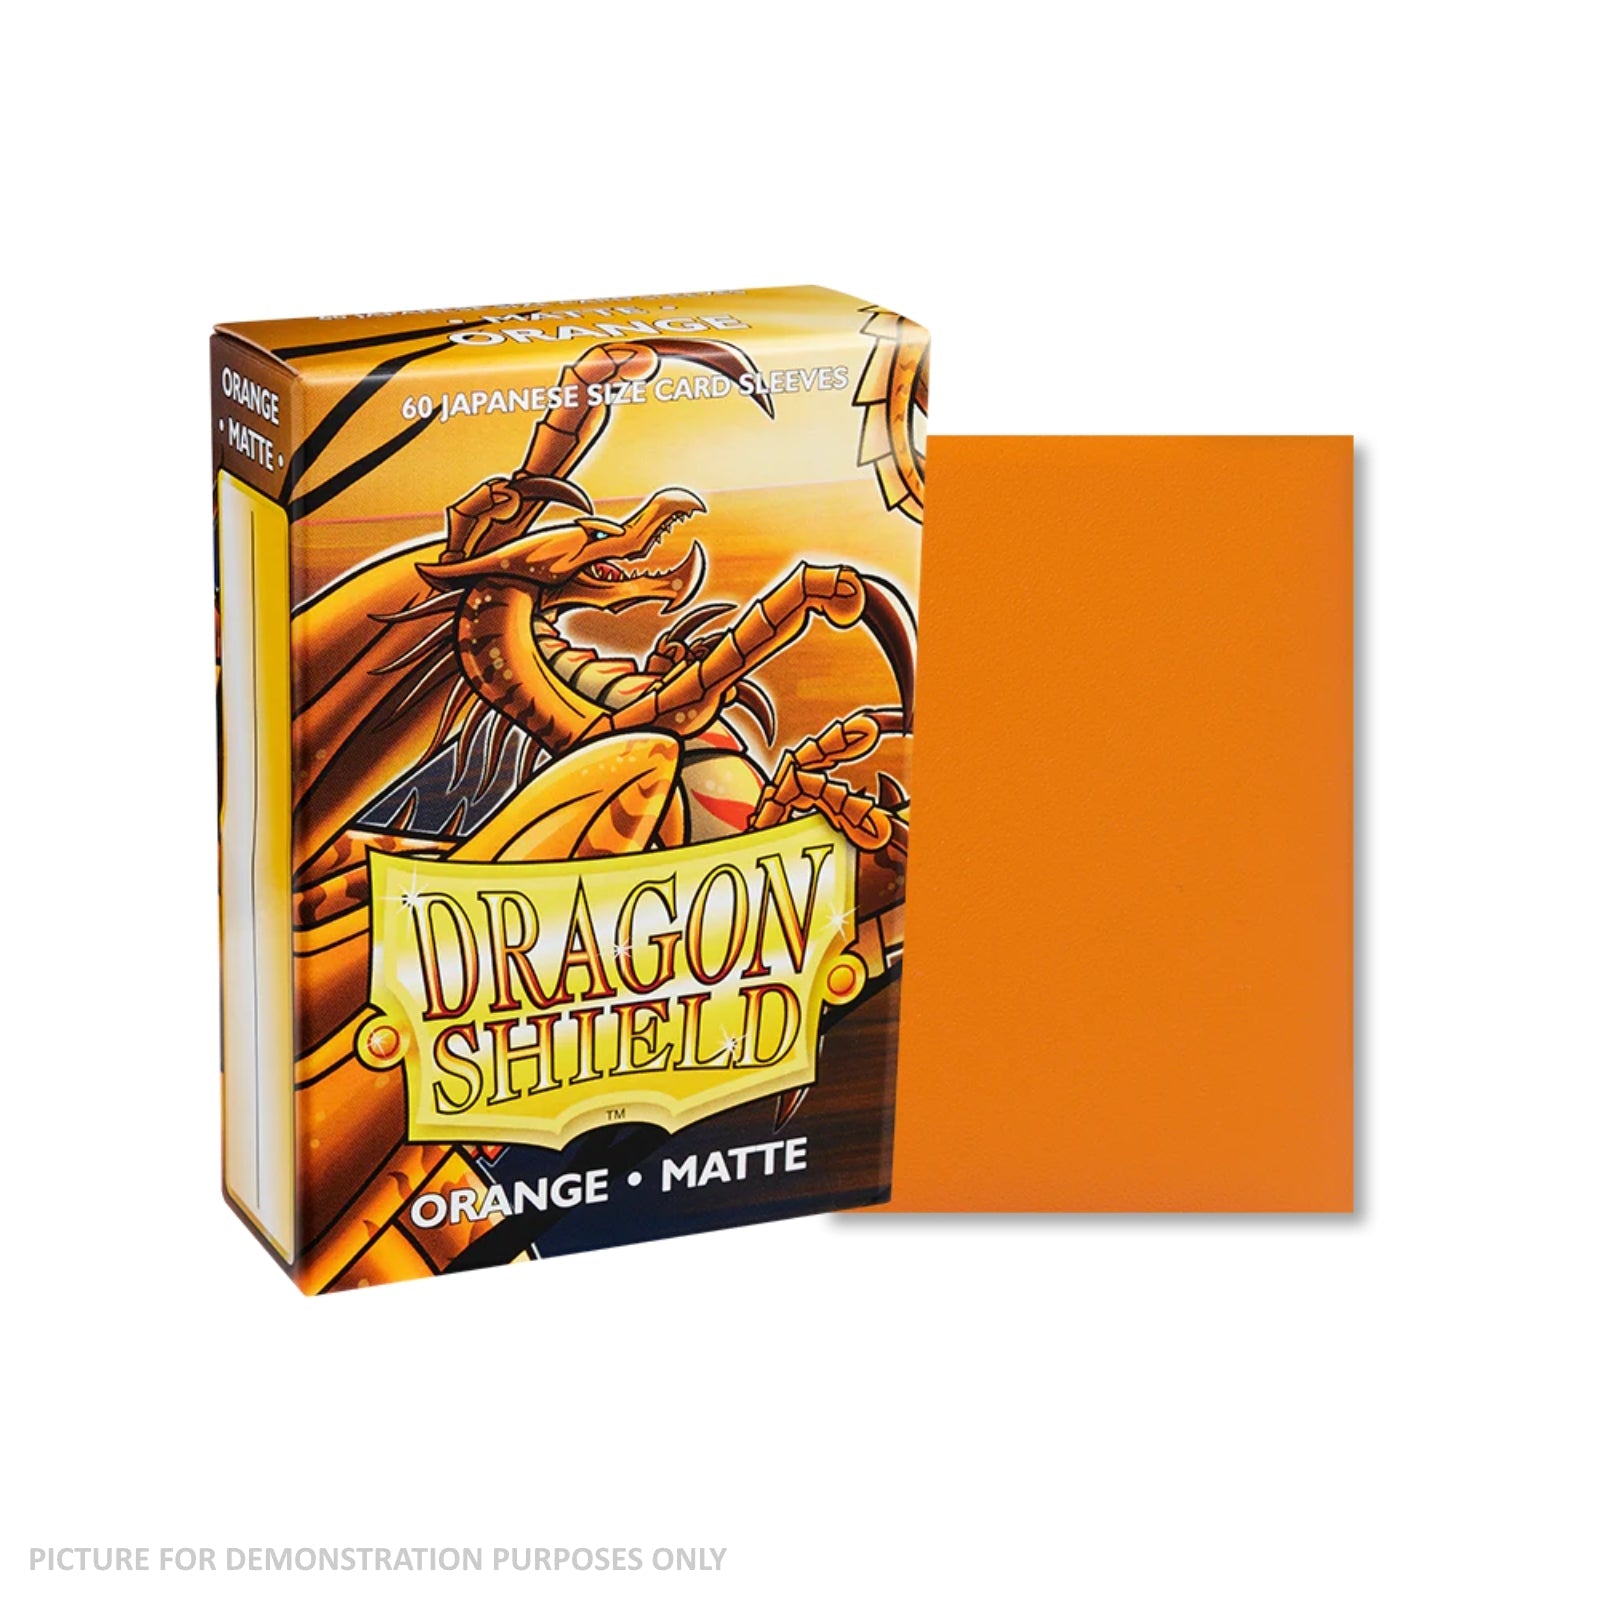 Dragon Shield 60 Japanese Size Card Sleeves - Matte Orange